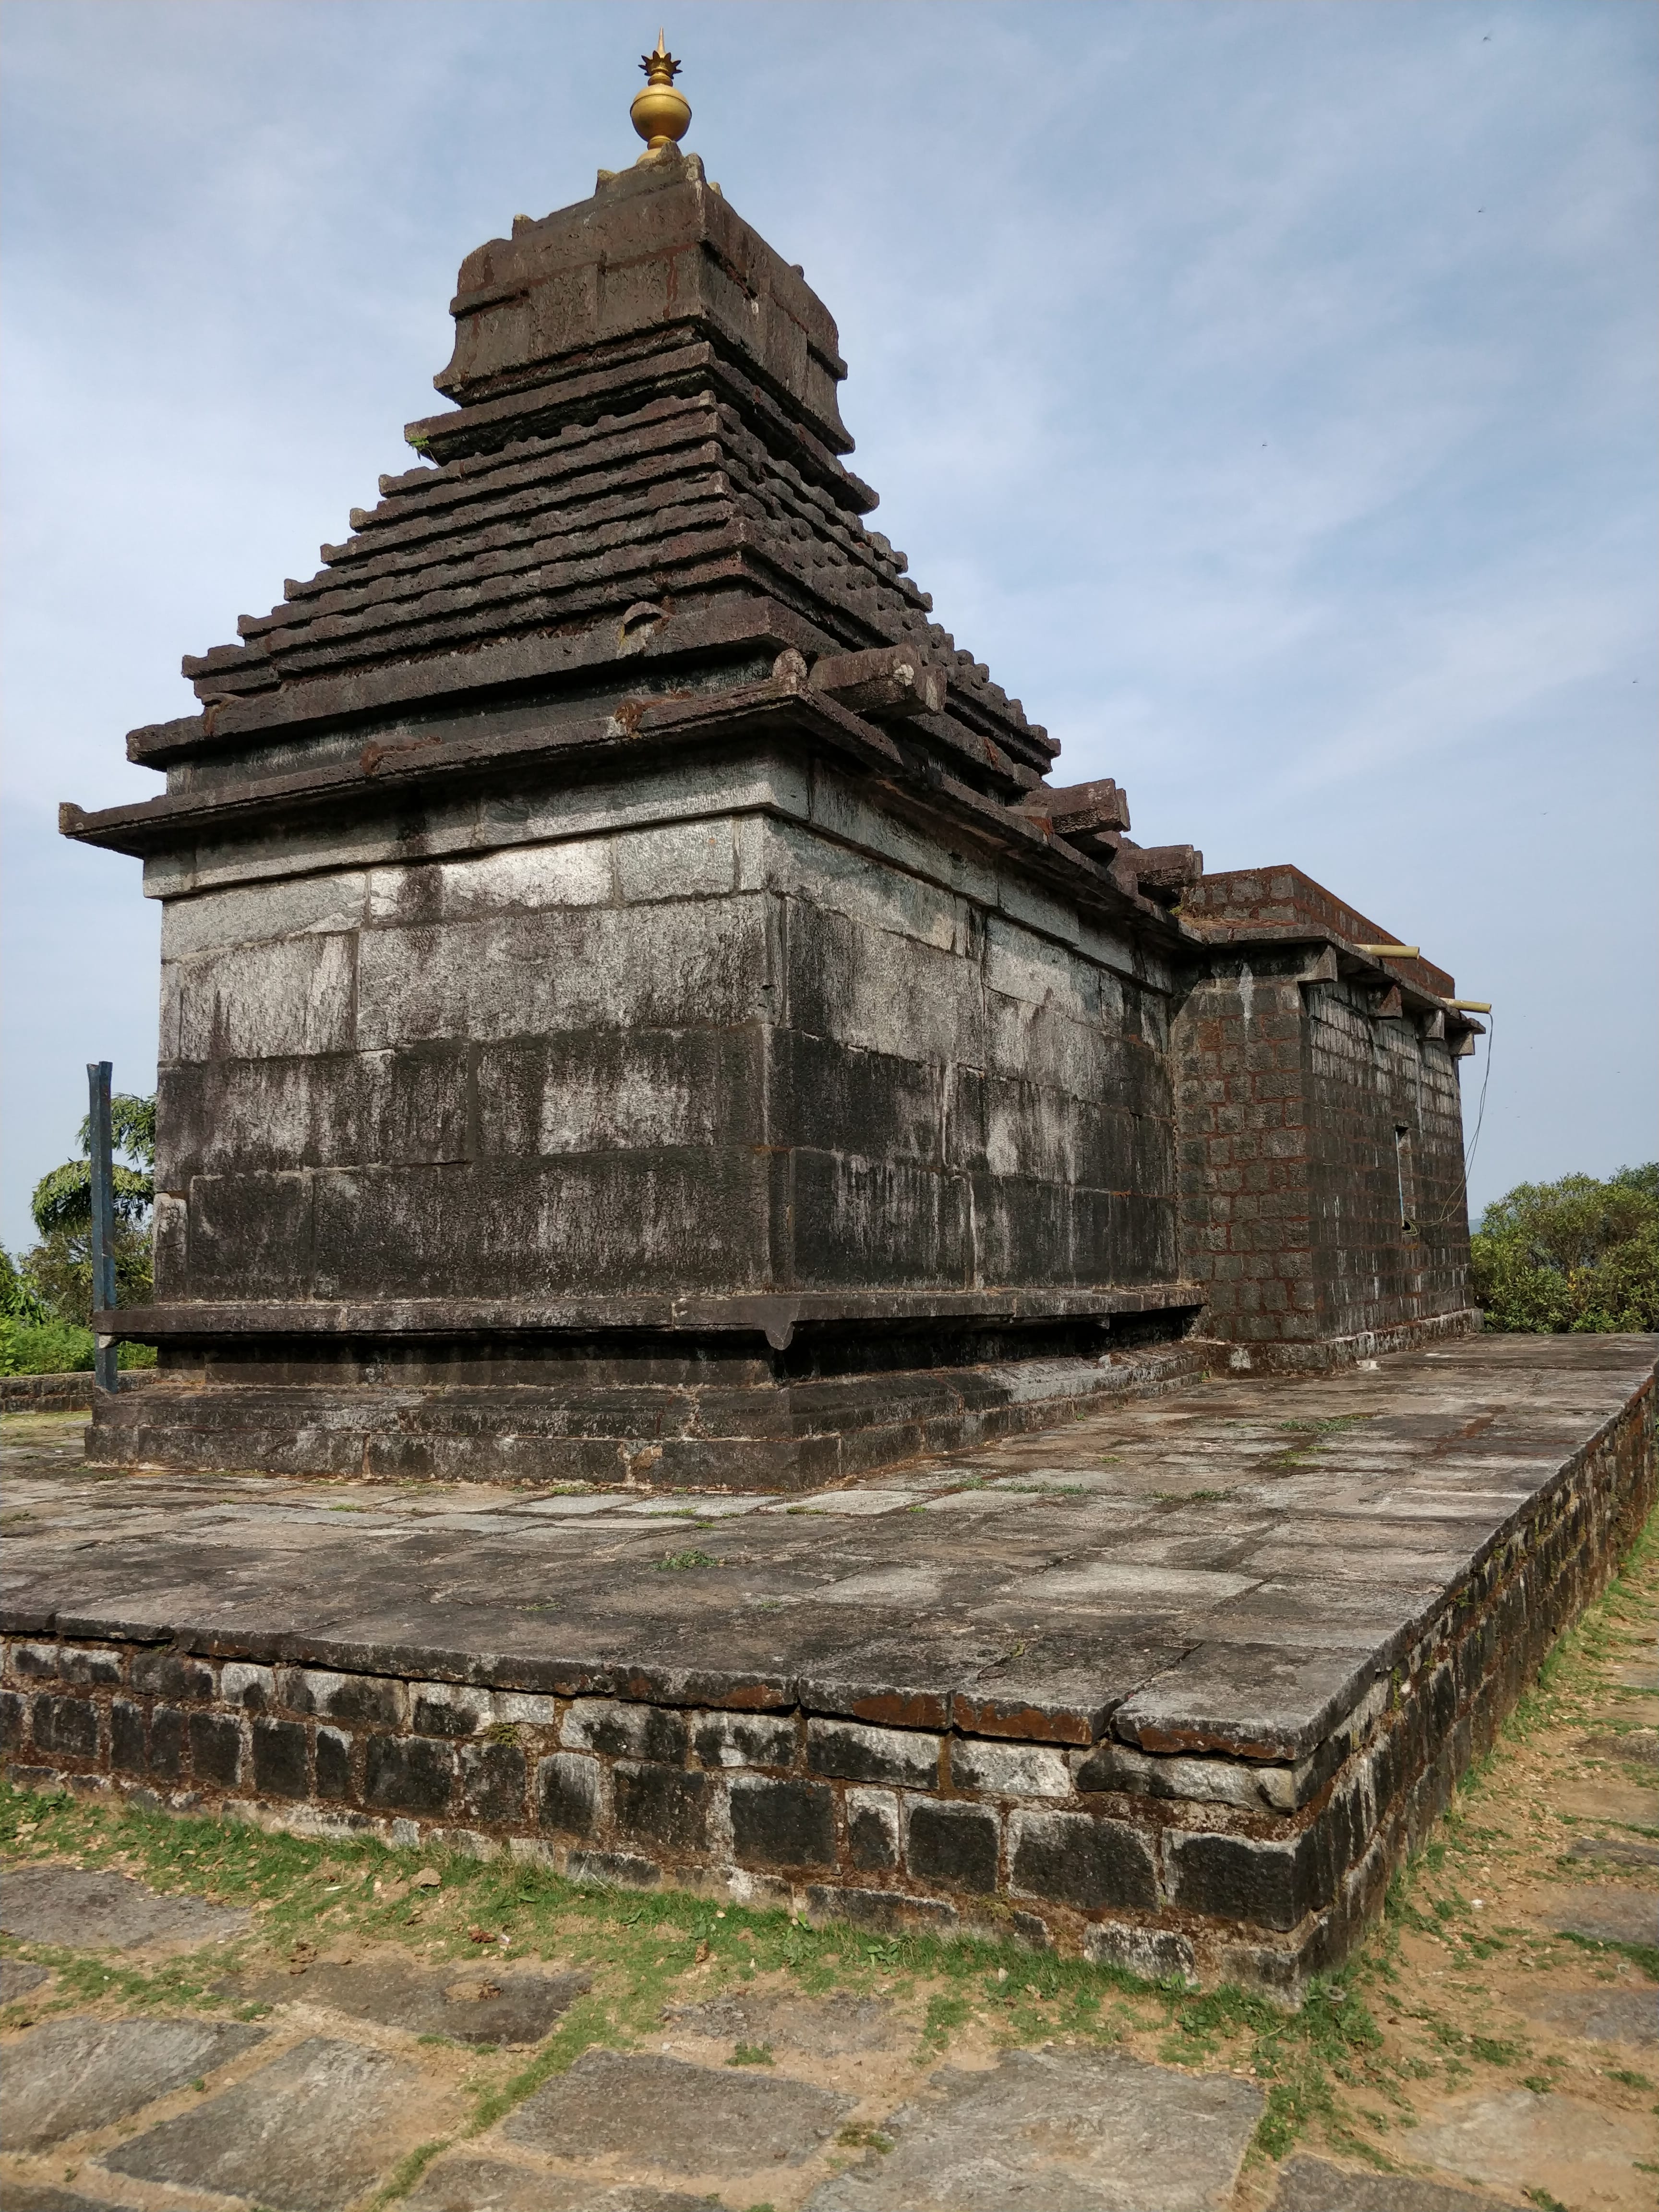 Bettada Byraweshwara temple